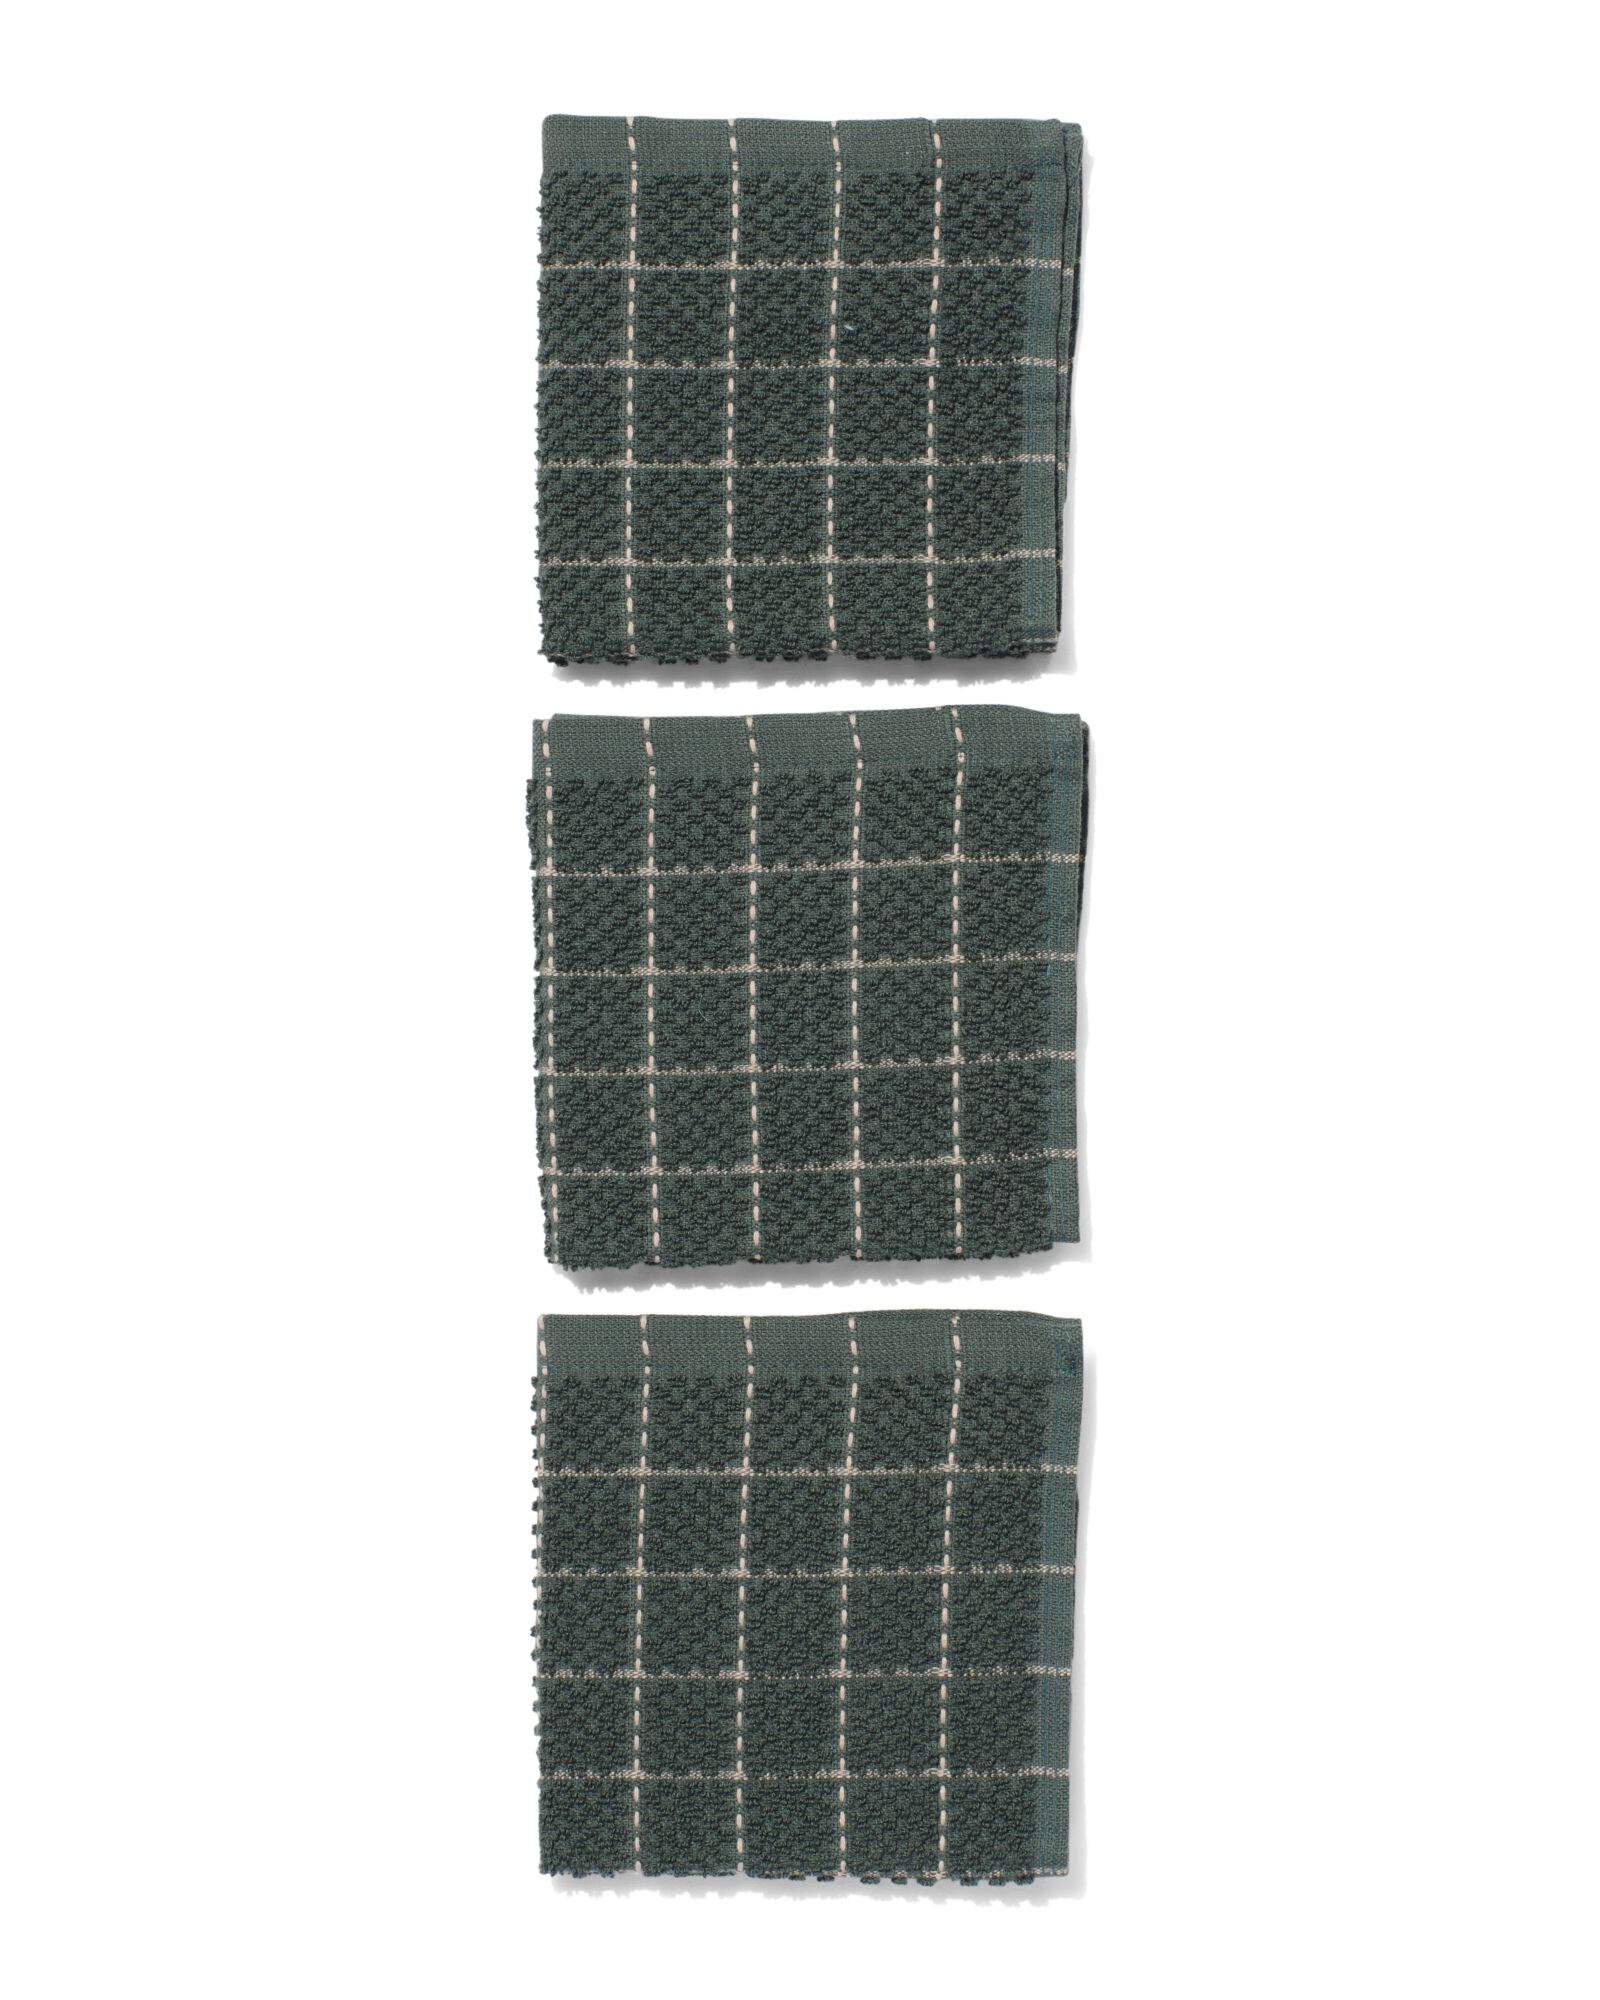 3 Spültücher, 30 x 30 cm, Baumwolle, grün kariert - 5490221 - HEMA